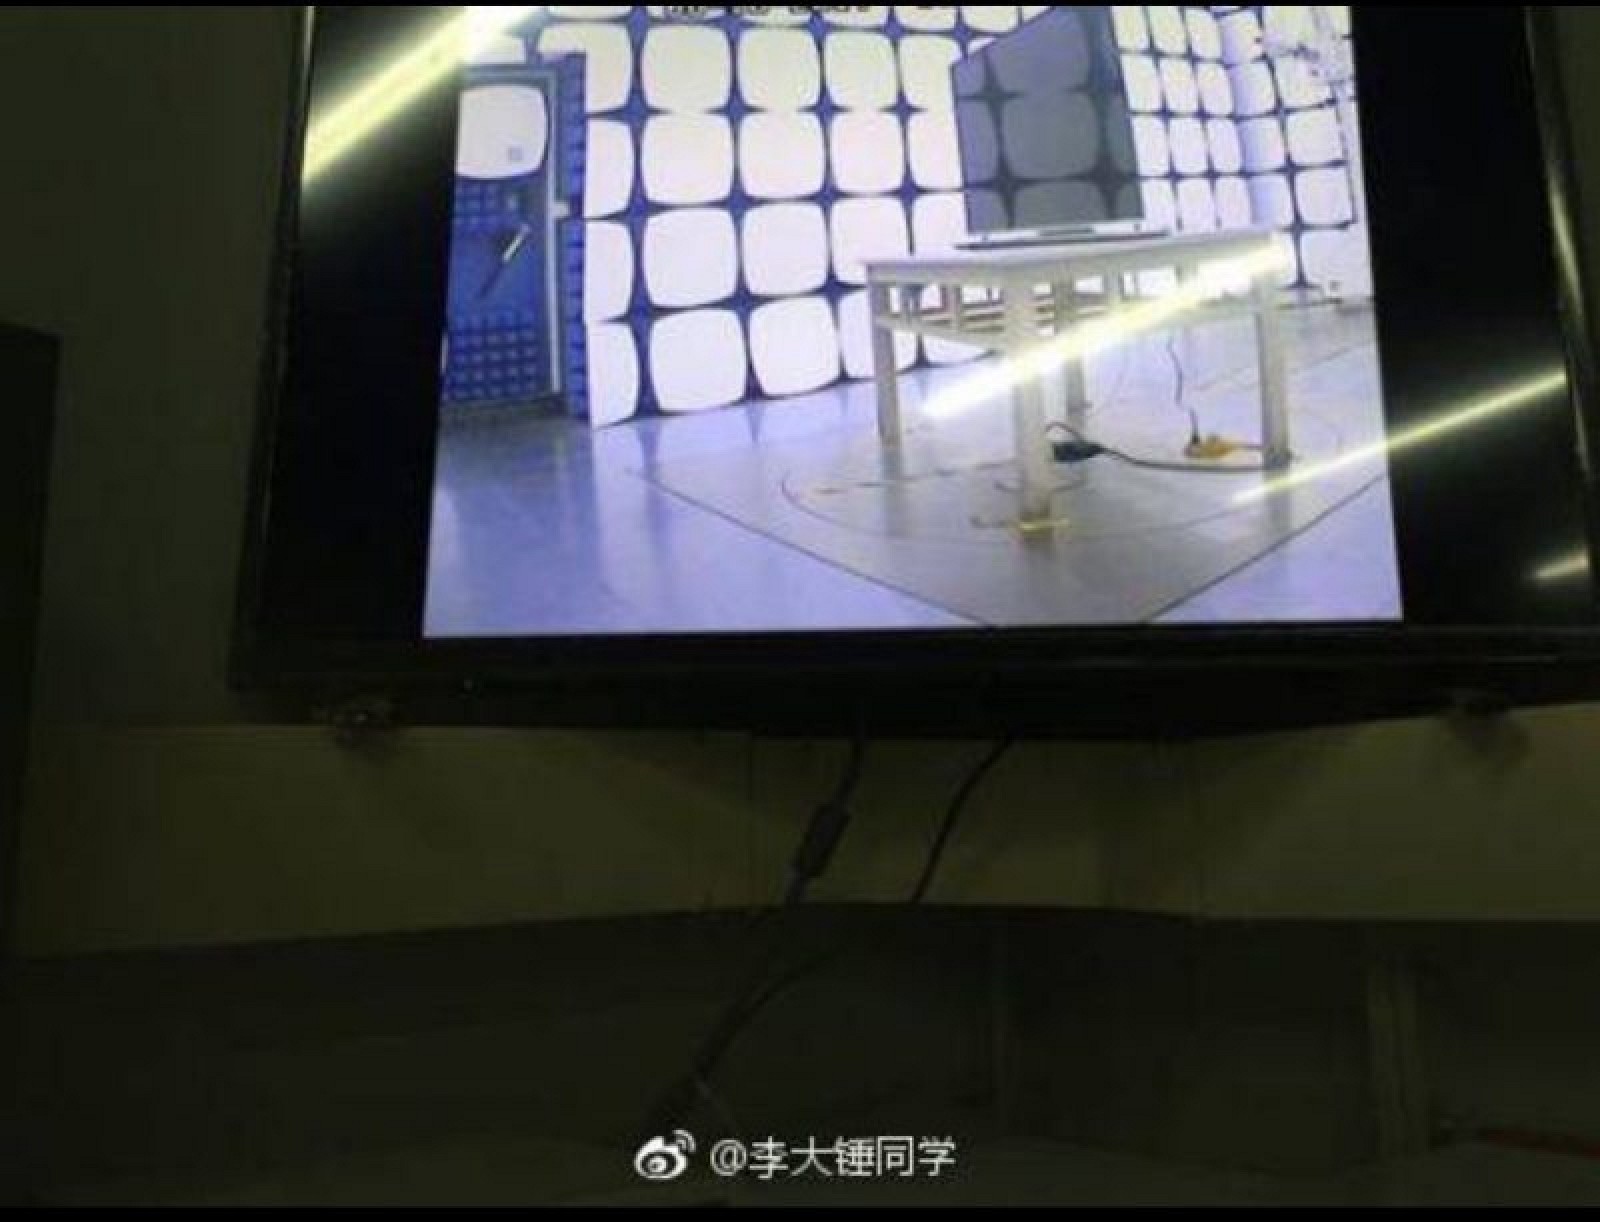 Supuesta TV de Apple siendo probada en alguna fábrica